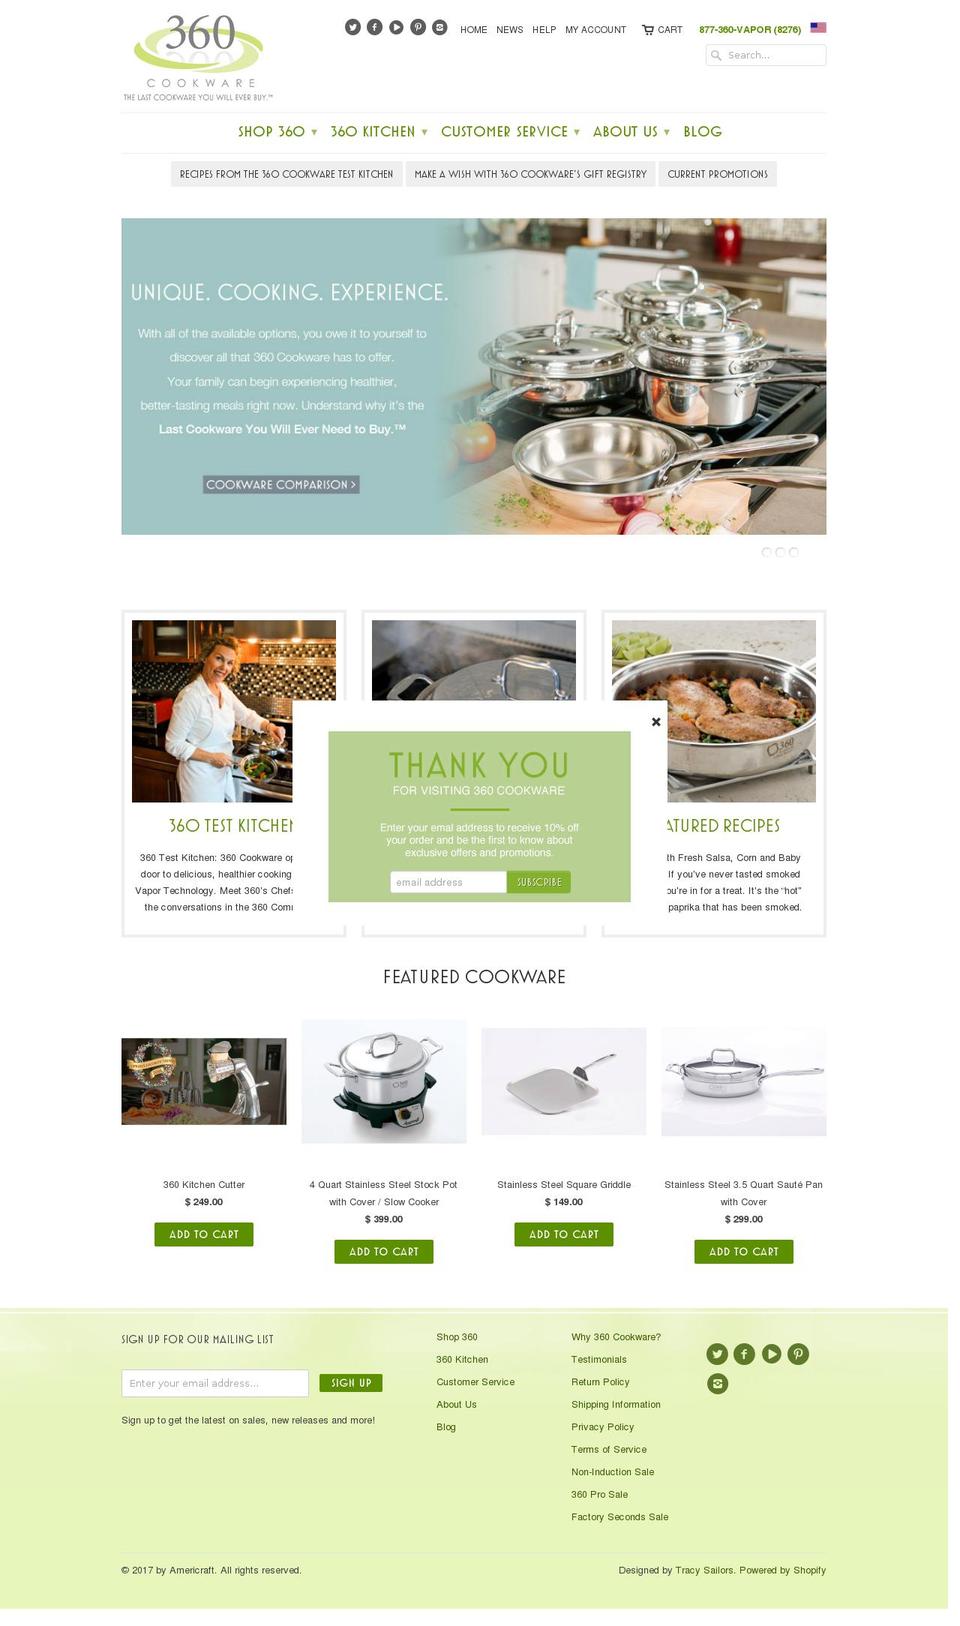 360cookware.com shopify website screenshot